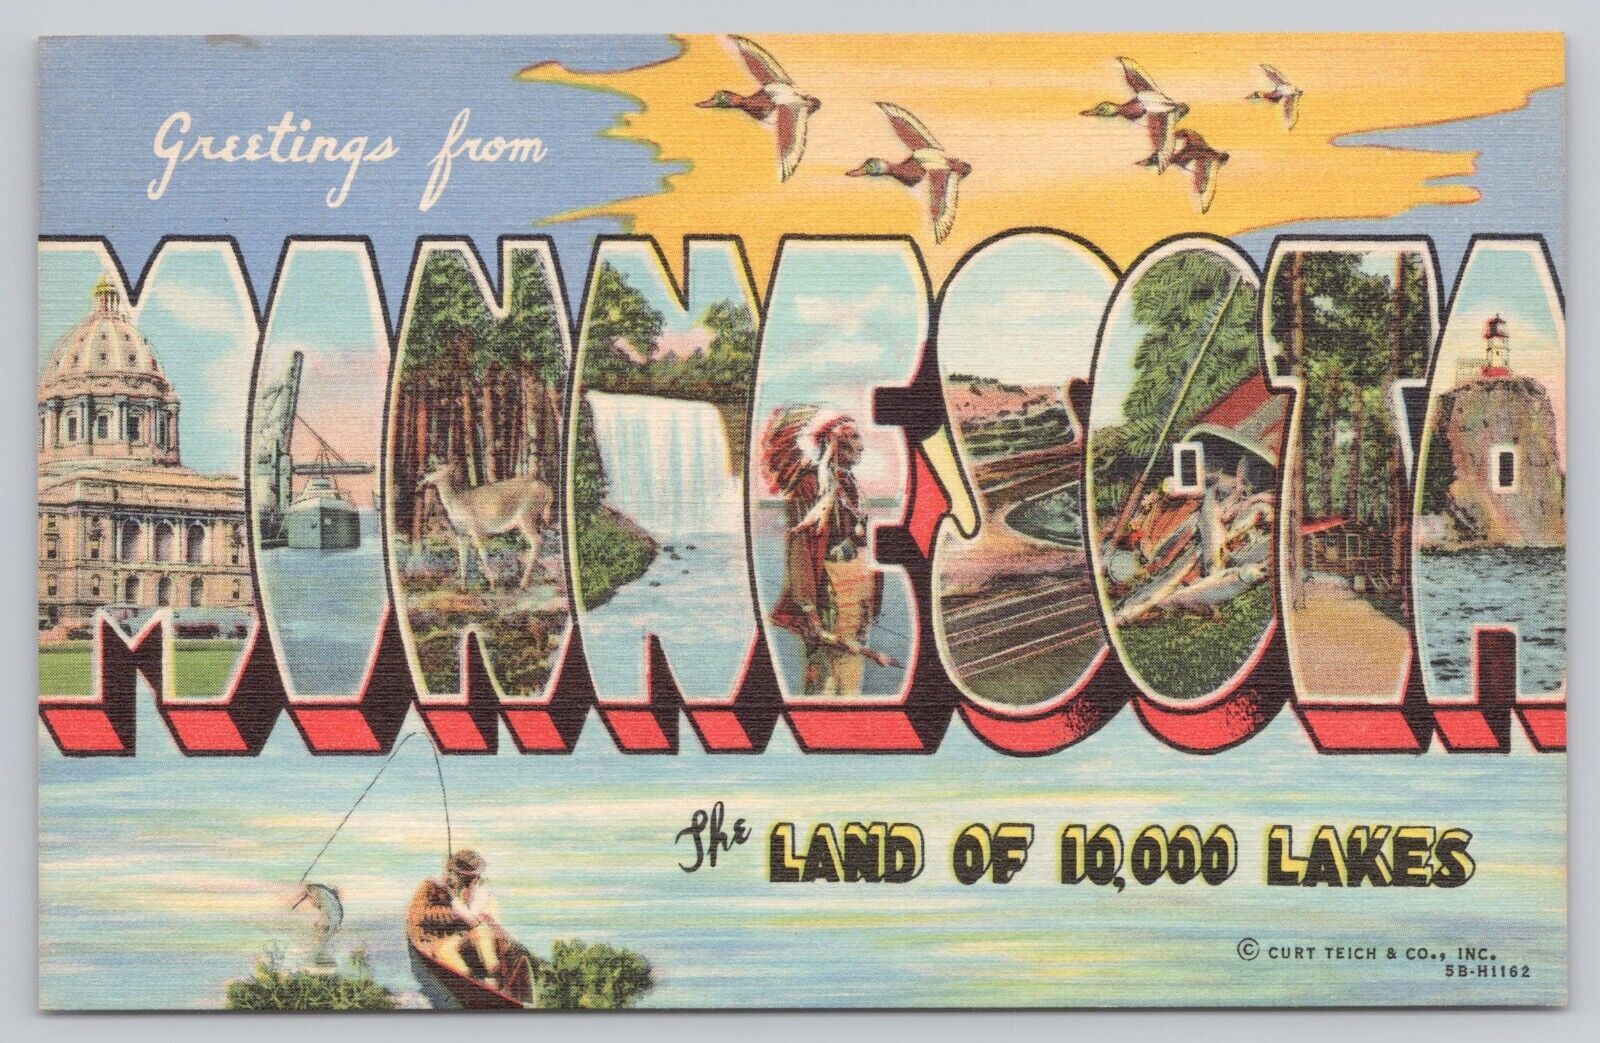 Minnesota, Large Letter Greetings, Fishing 10,000 Lakes, Vintage Postcard